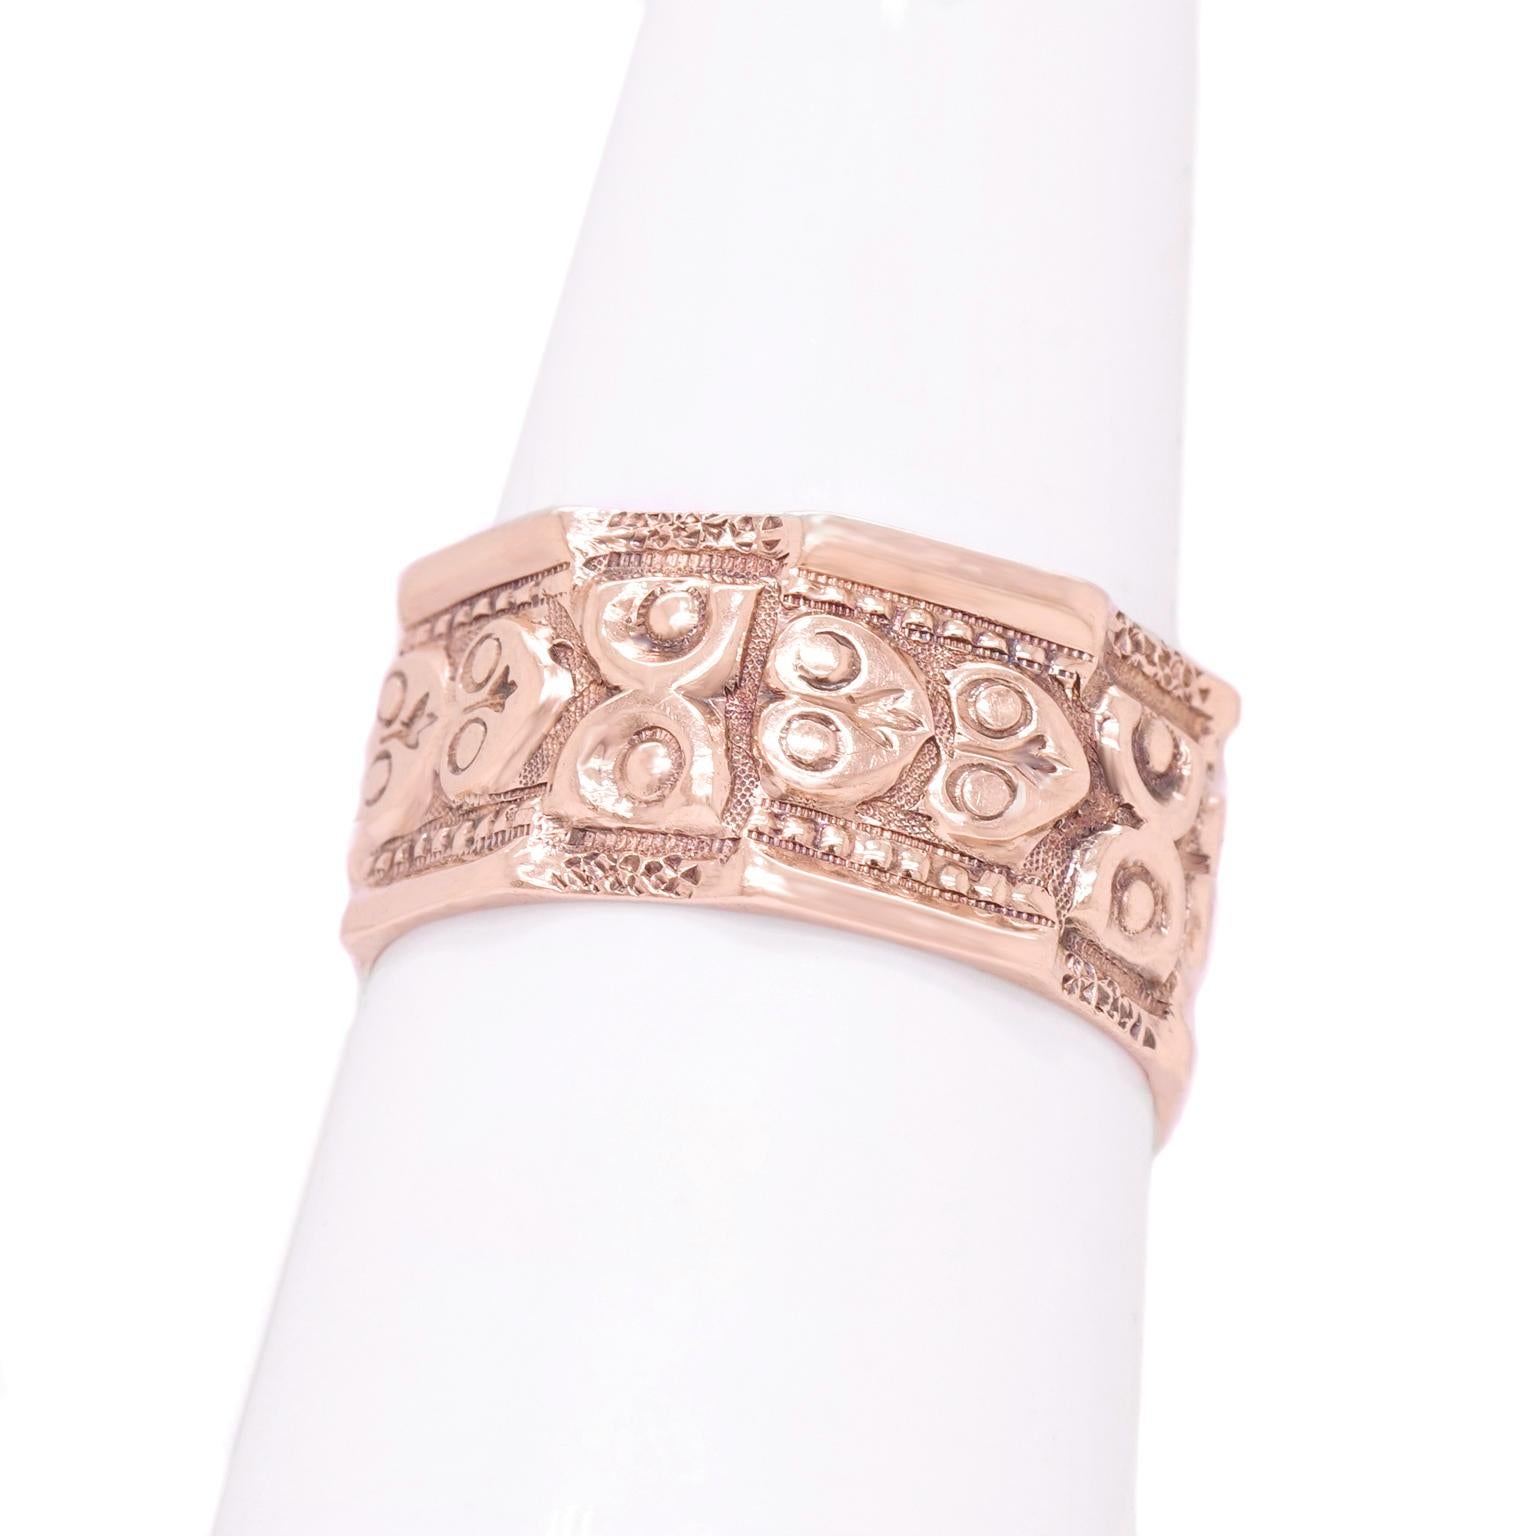 Women's or Men's Antique Renaissance Revival Gold Band Ring